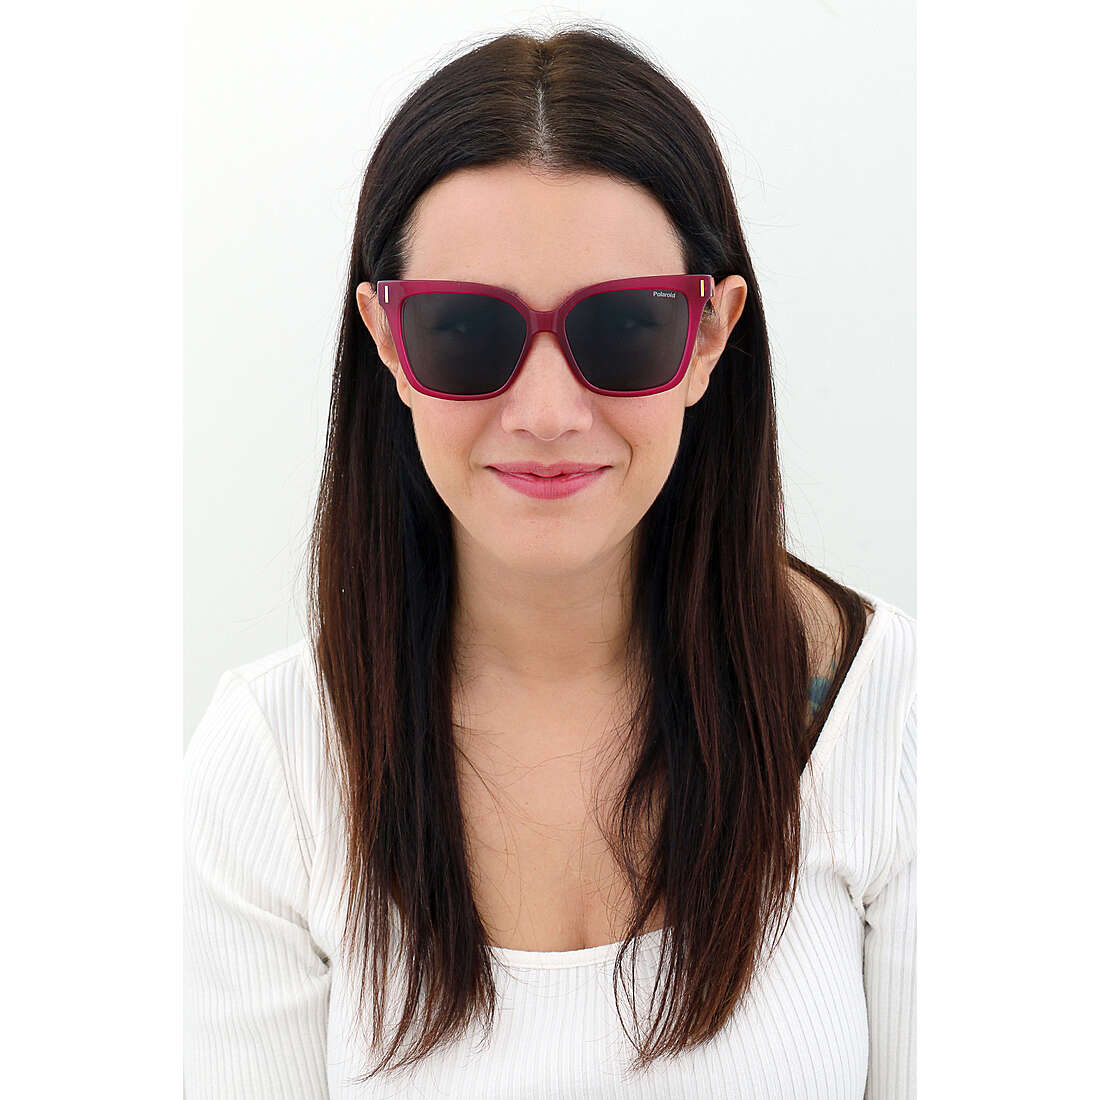 Polaroid occhiali da sole Cool donna 205689MU154M9 indosso